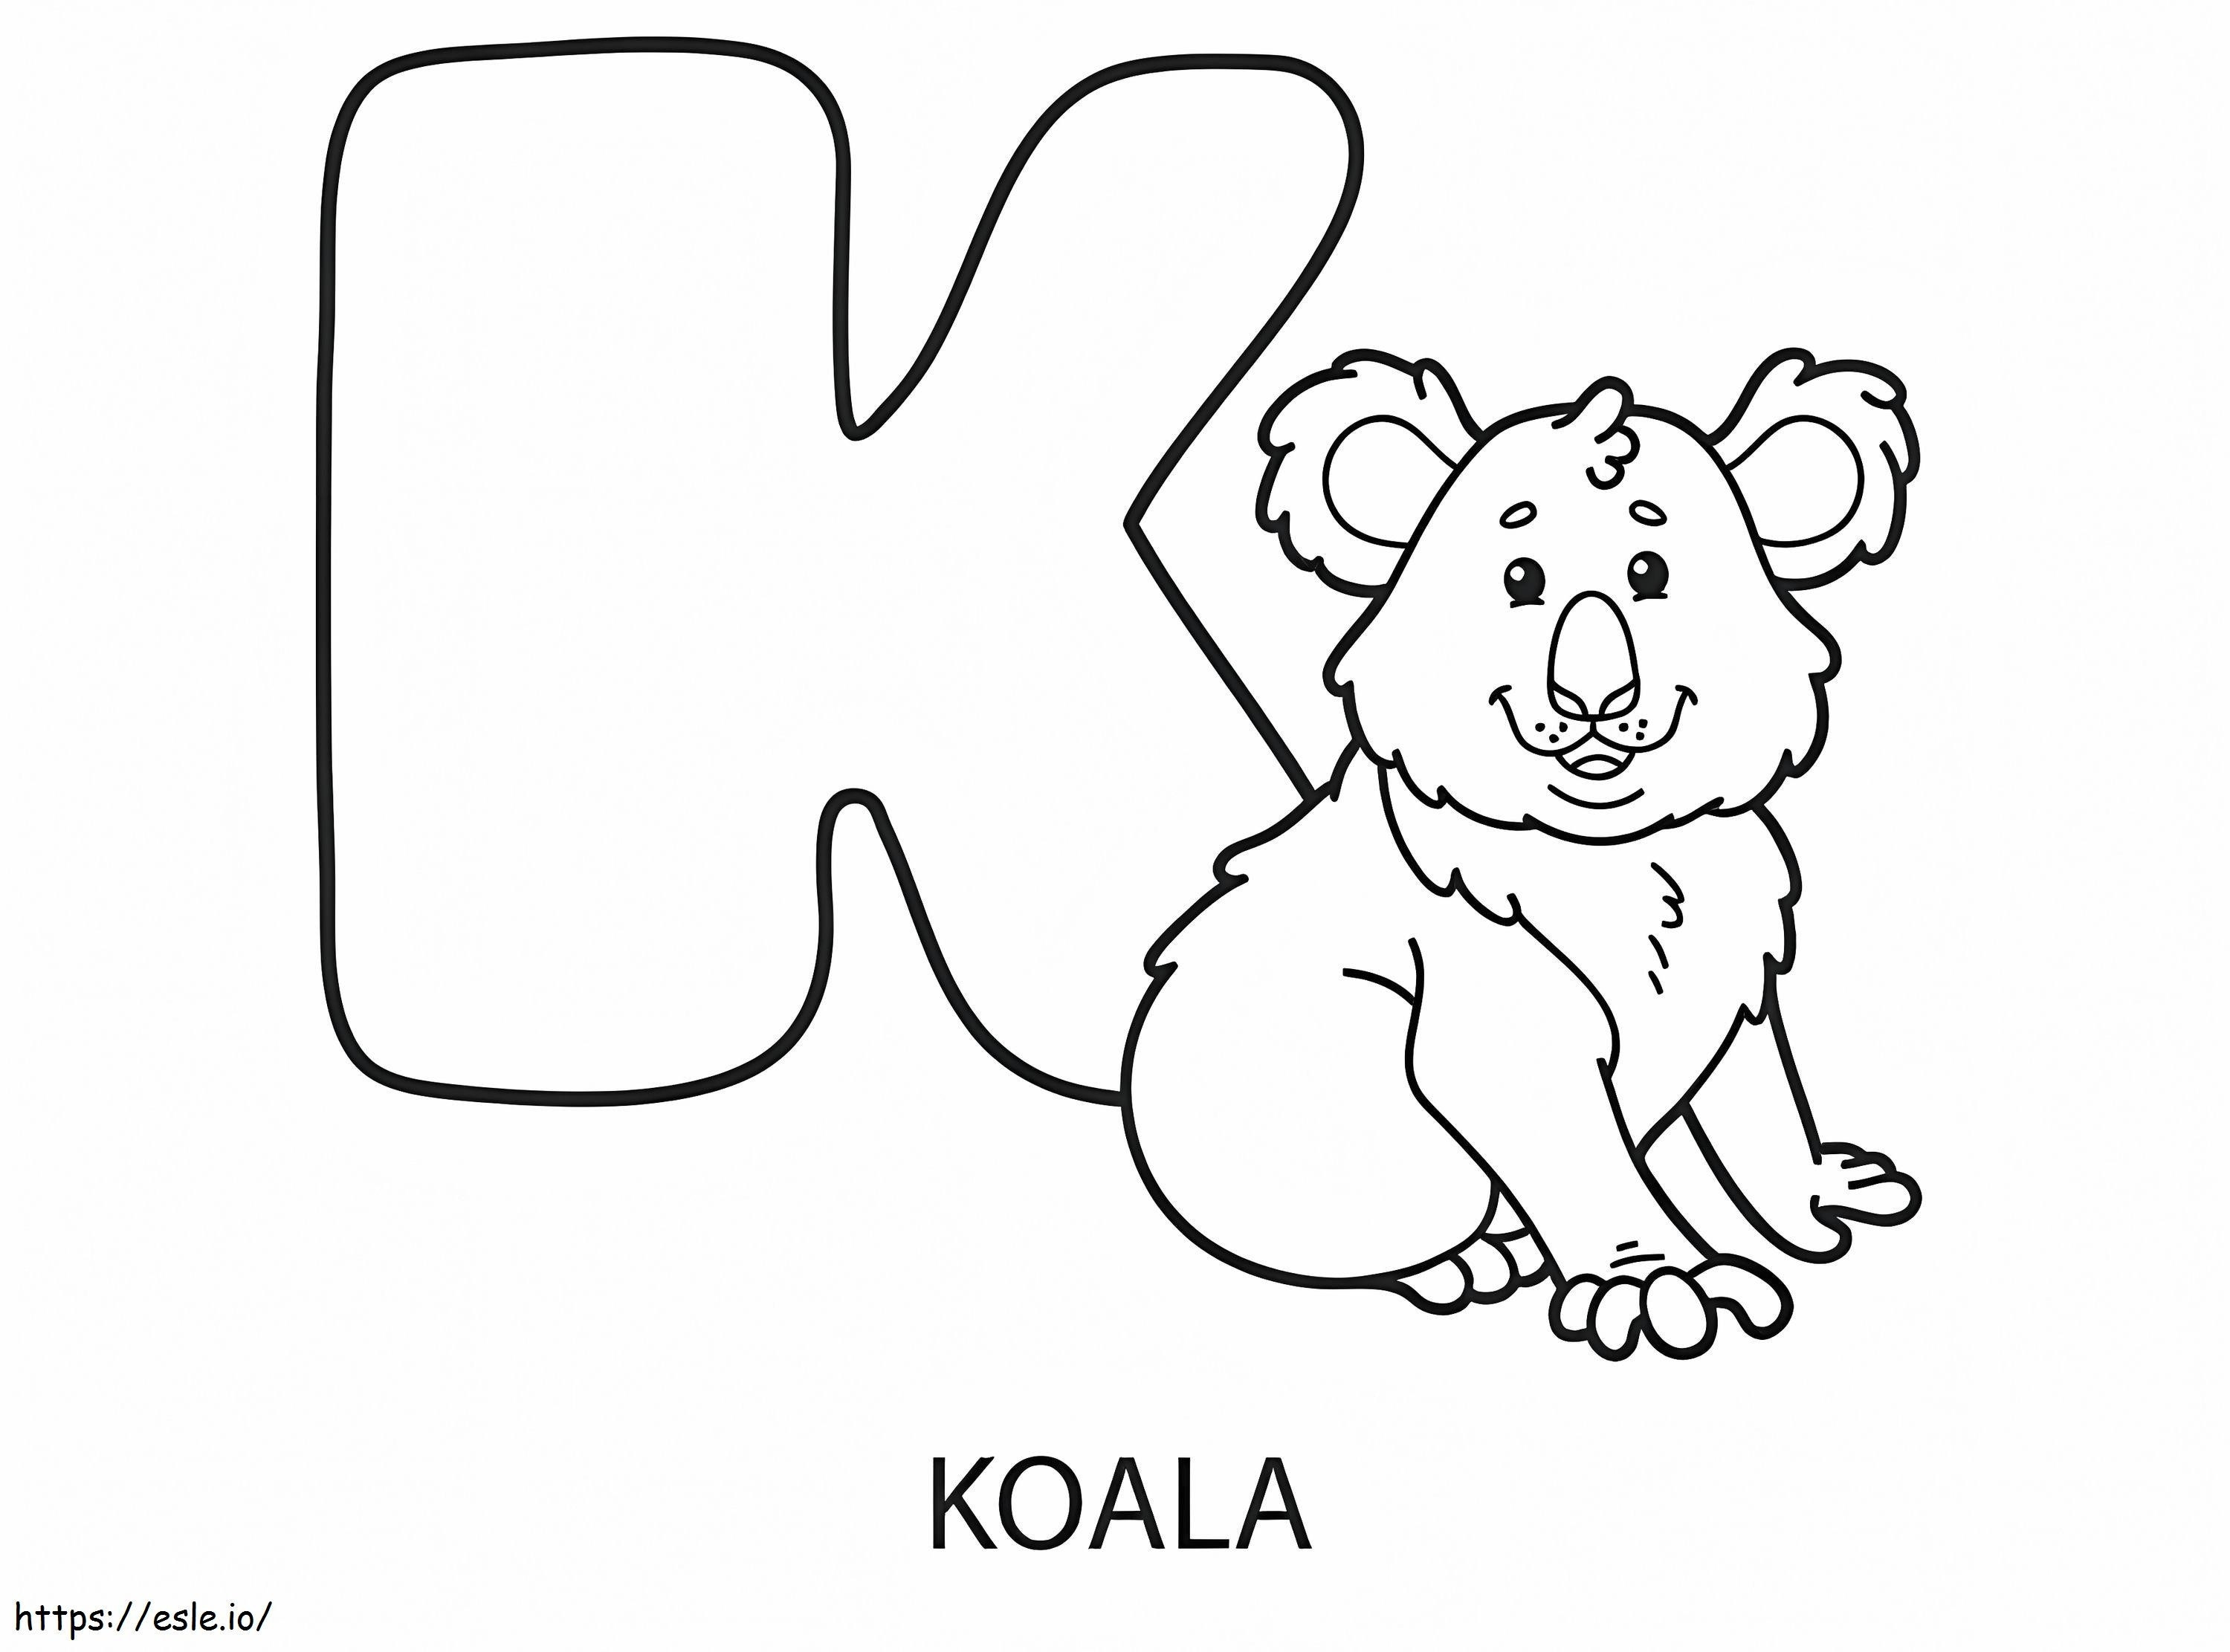 Buchstabe K für Koala ausmalbilder